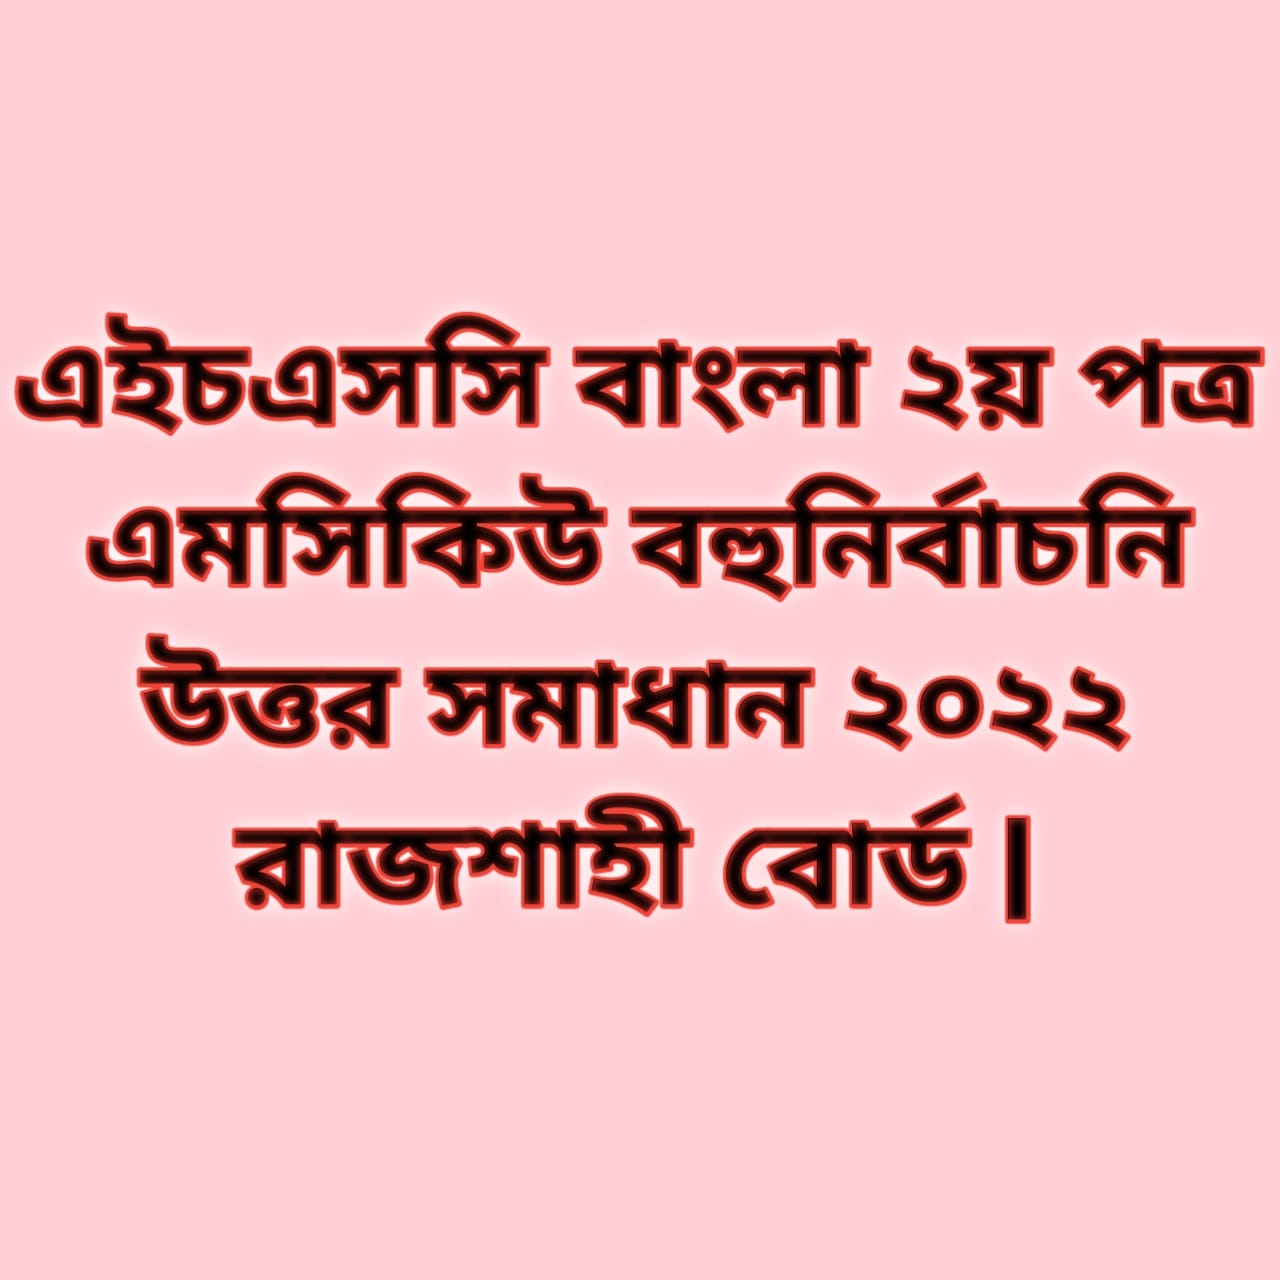 এইচএসসি বাংলা ২য় পত্র এমসিকিউ নৈব্যন্তিক বহুনির্বাচনি প্রশ্ন উত্তর সমাধান ২০২২ রাজশাহী বোর্ড, hsc Bangla 2nd paper mcq question solution answer 2022 Rajshahi Board